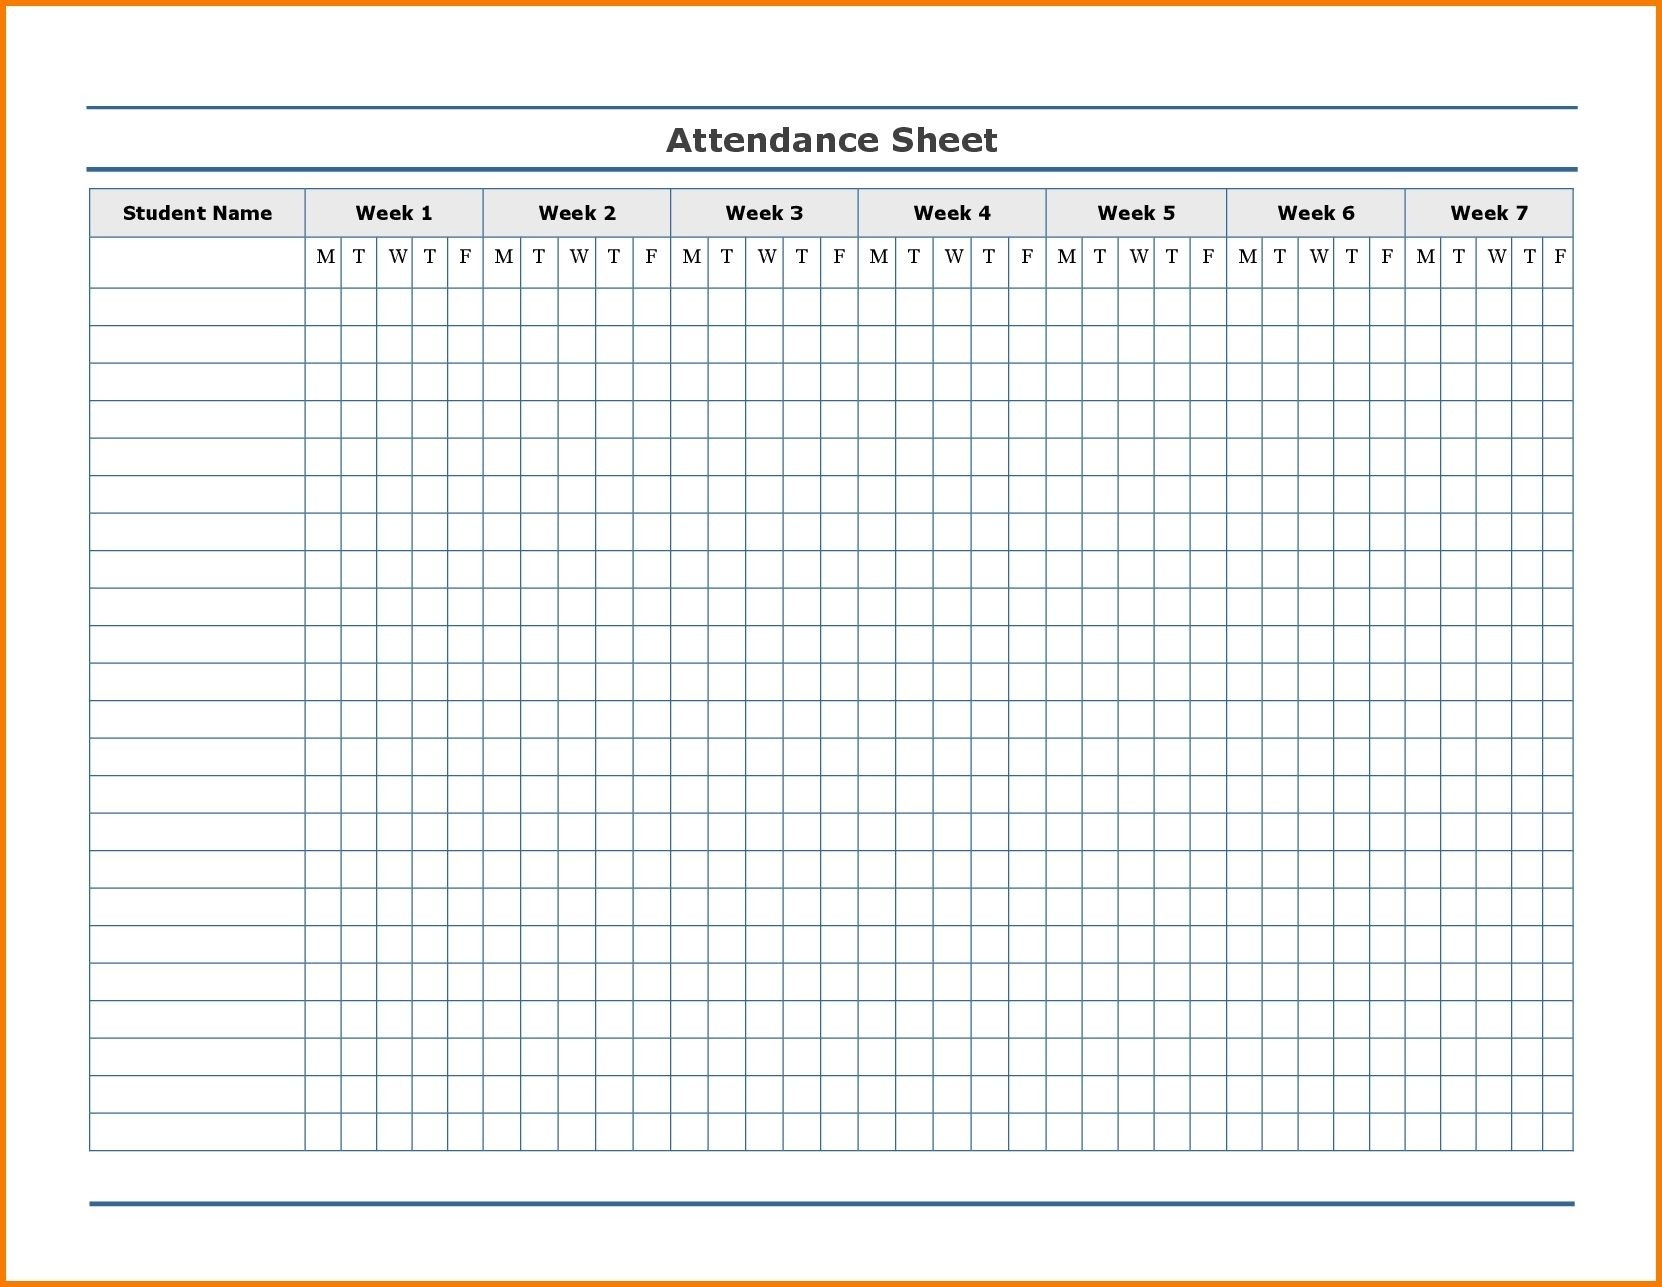 Free Employee Attendance Calendar | Employee Tracker-Printable 2020 Attendance Calendar Template